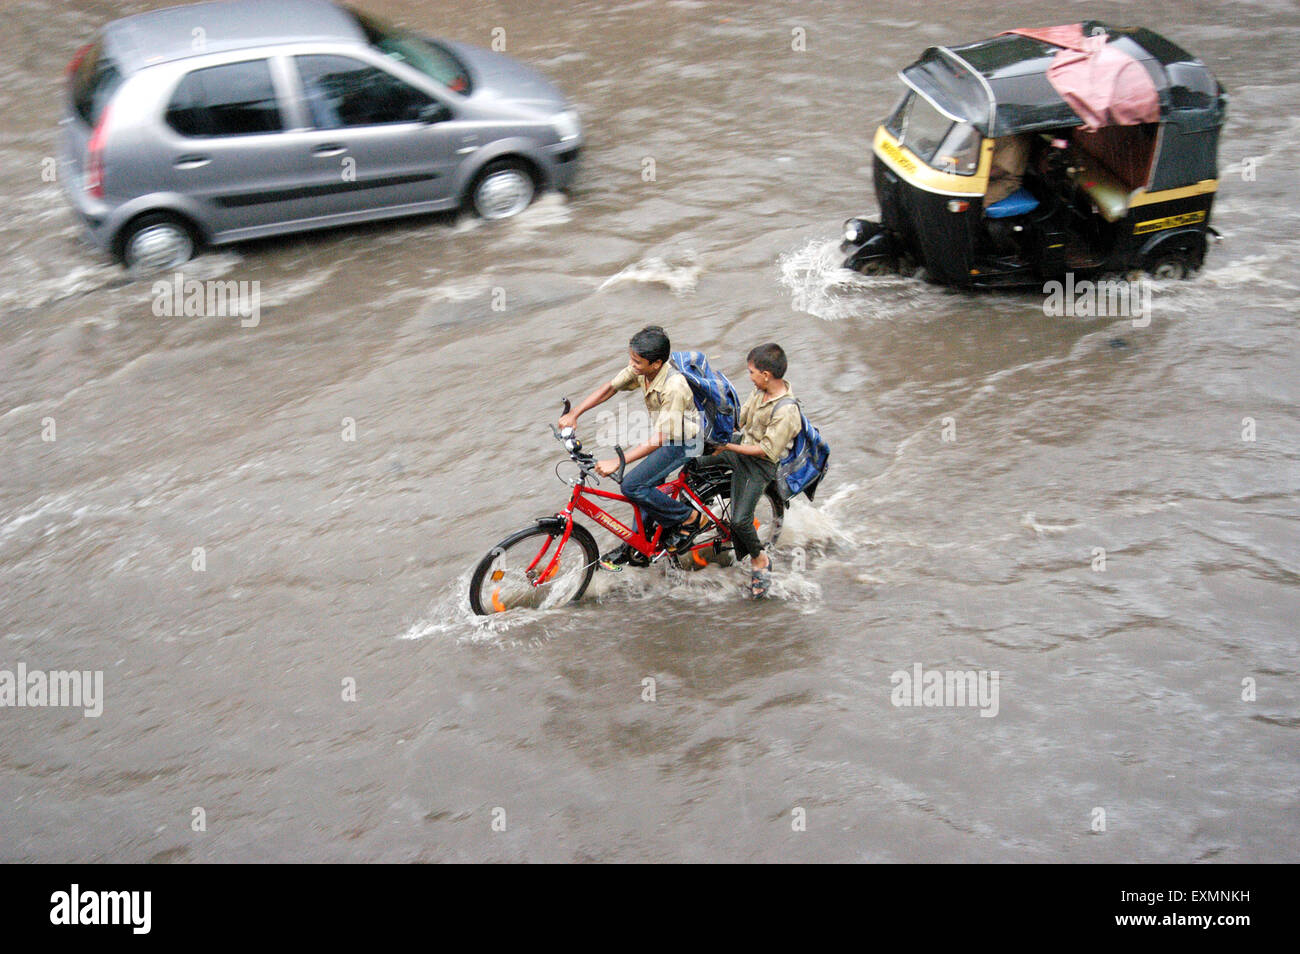 Schule Jungs fahren Fahrrad Auto Rikscha Monsun Regen Autofahren Wasser überflutete Straße Vidyavihar Mumbai Indien Stockfoto